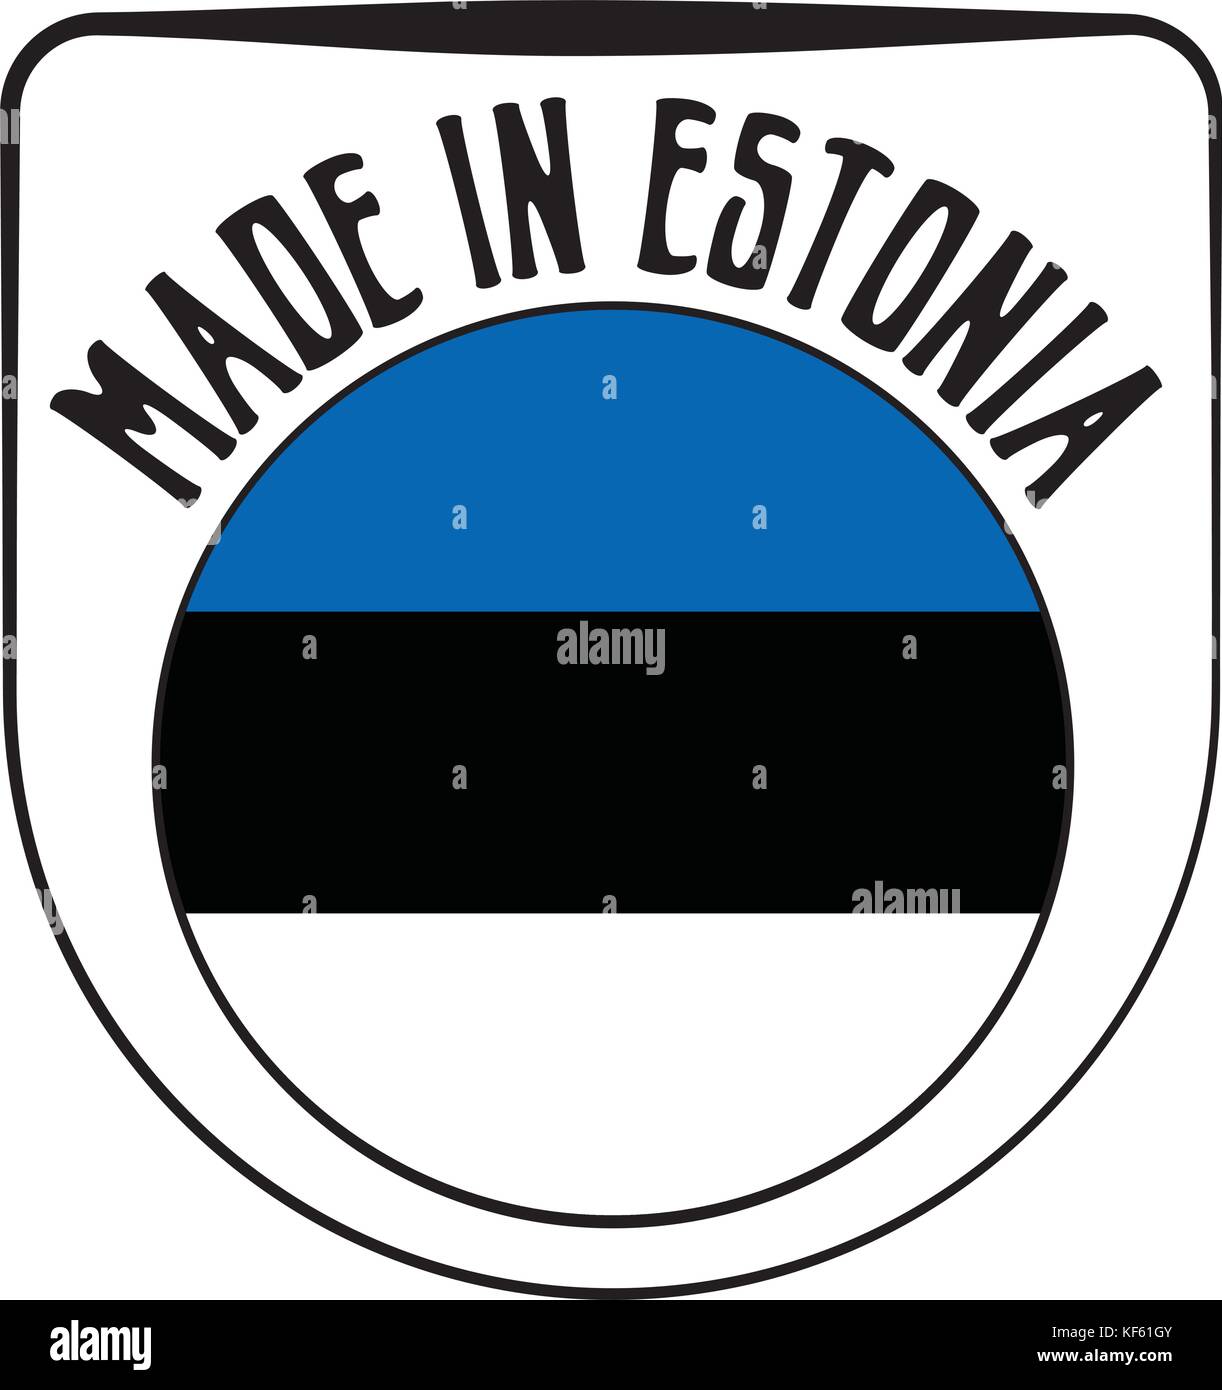 Faites en Estonie rubber stamp Illustration de Vecteur